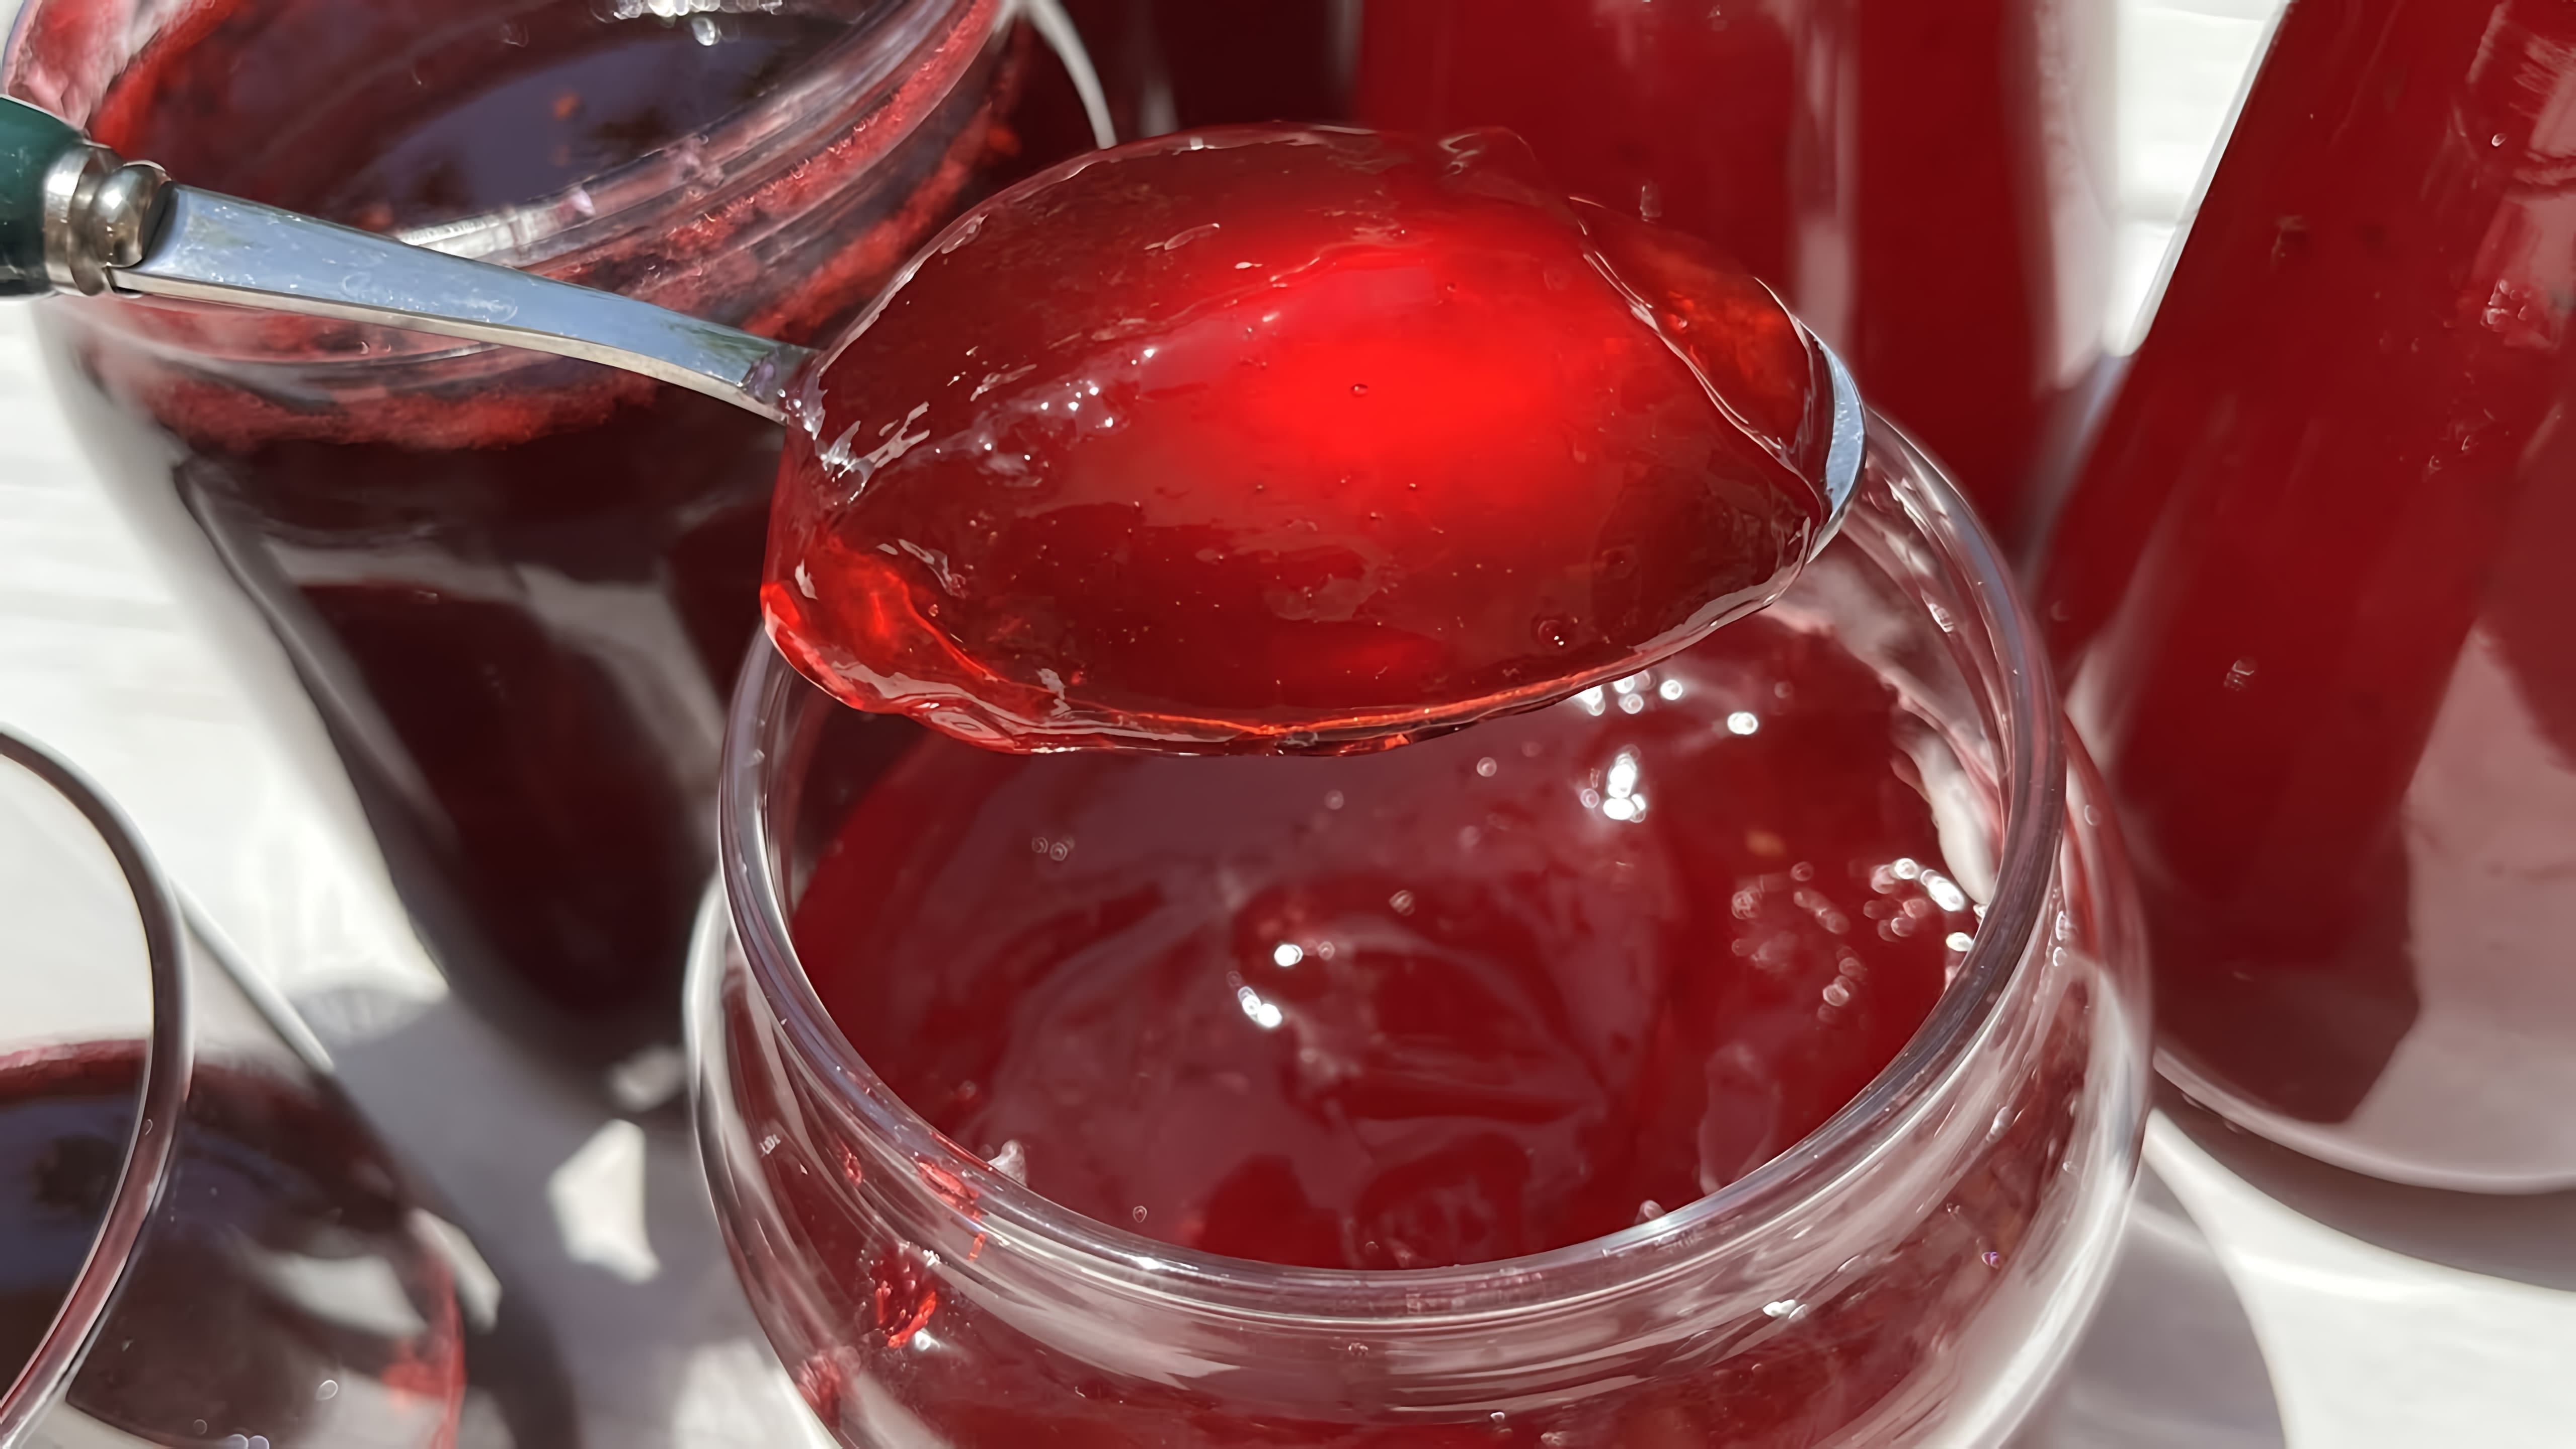 Видео рецепт красной смородиновой желе, которое можно приготовить всего за несколько минут без холодильника